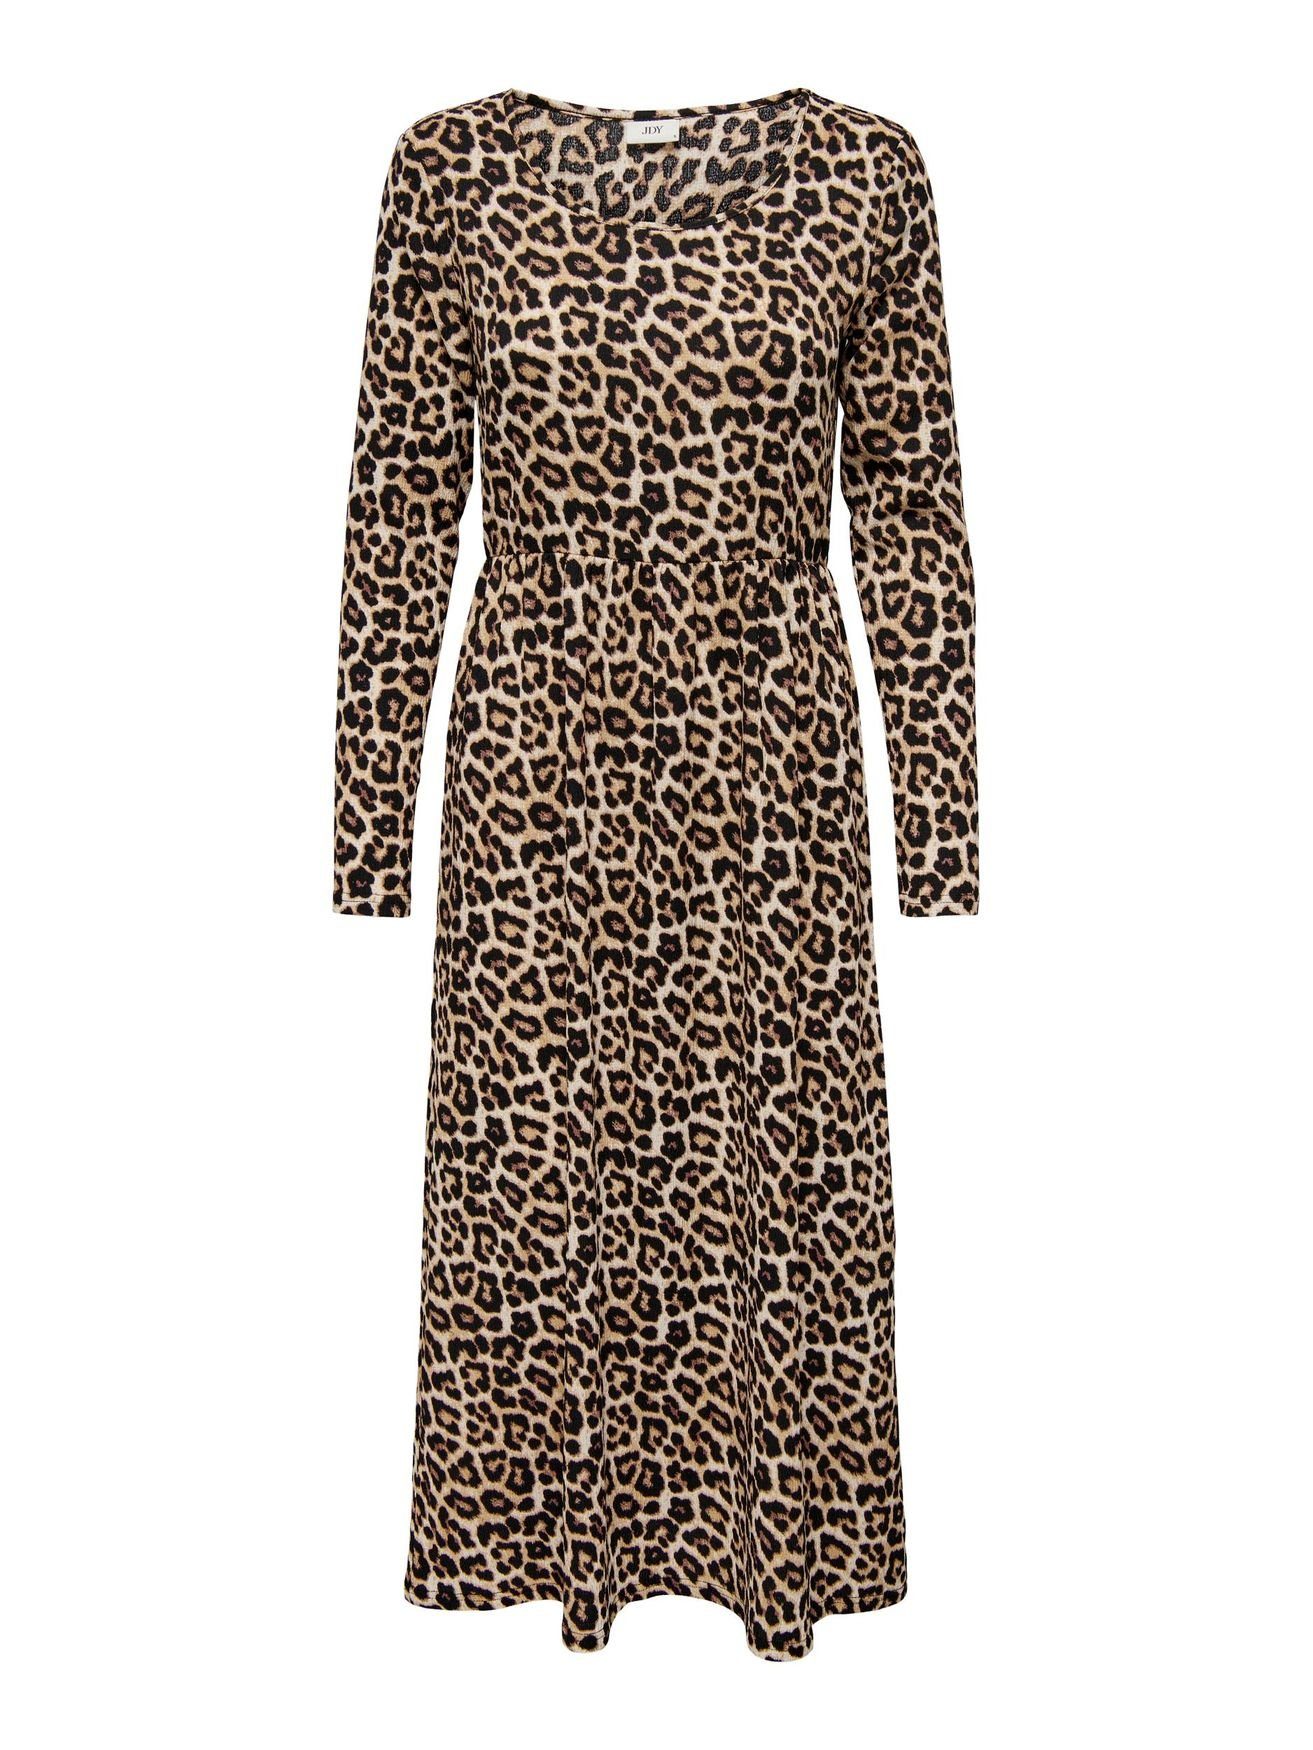 JACQUELINE de YONG Shirtkleid Langes Langarm Kleid Animal Print Midi Dress JDYLOTUS (lang) 5412 in Braun